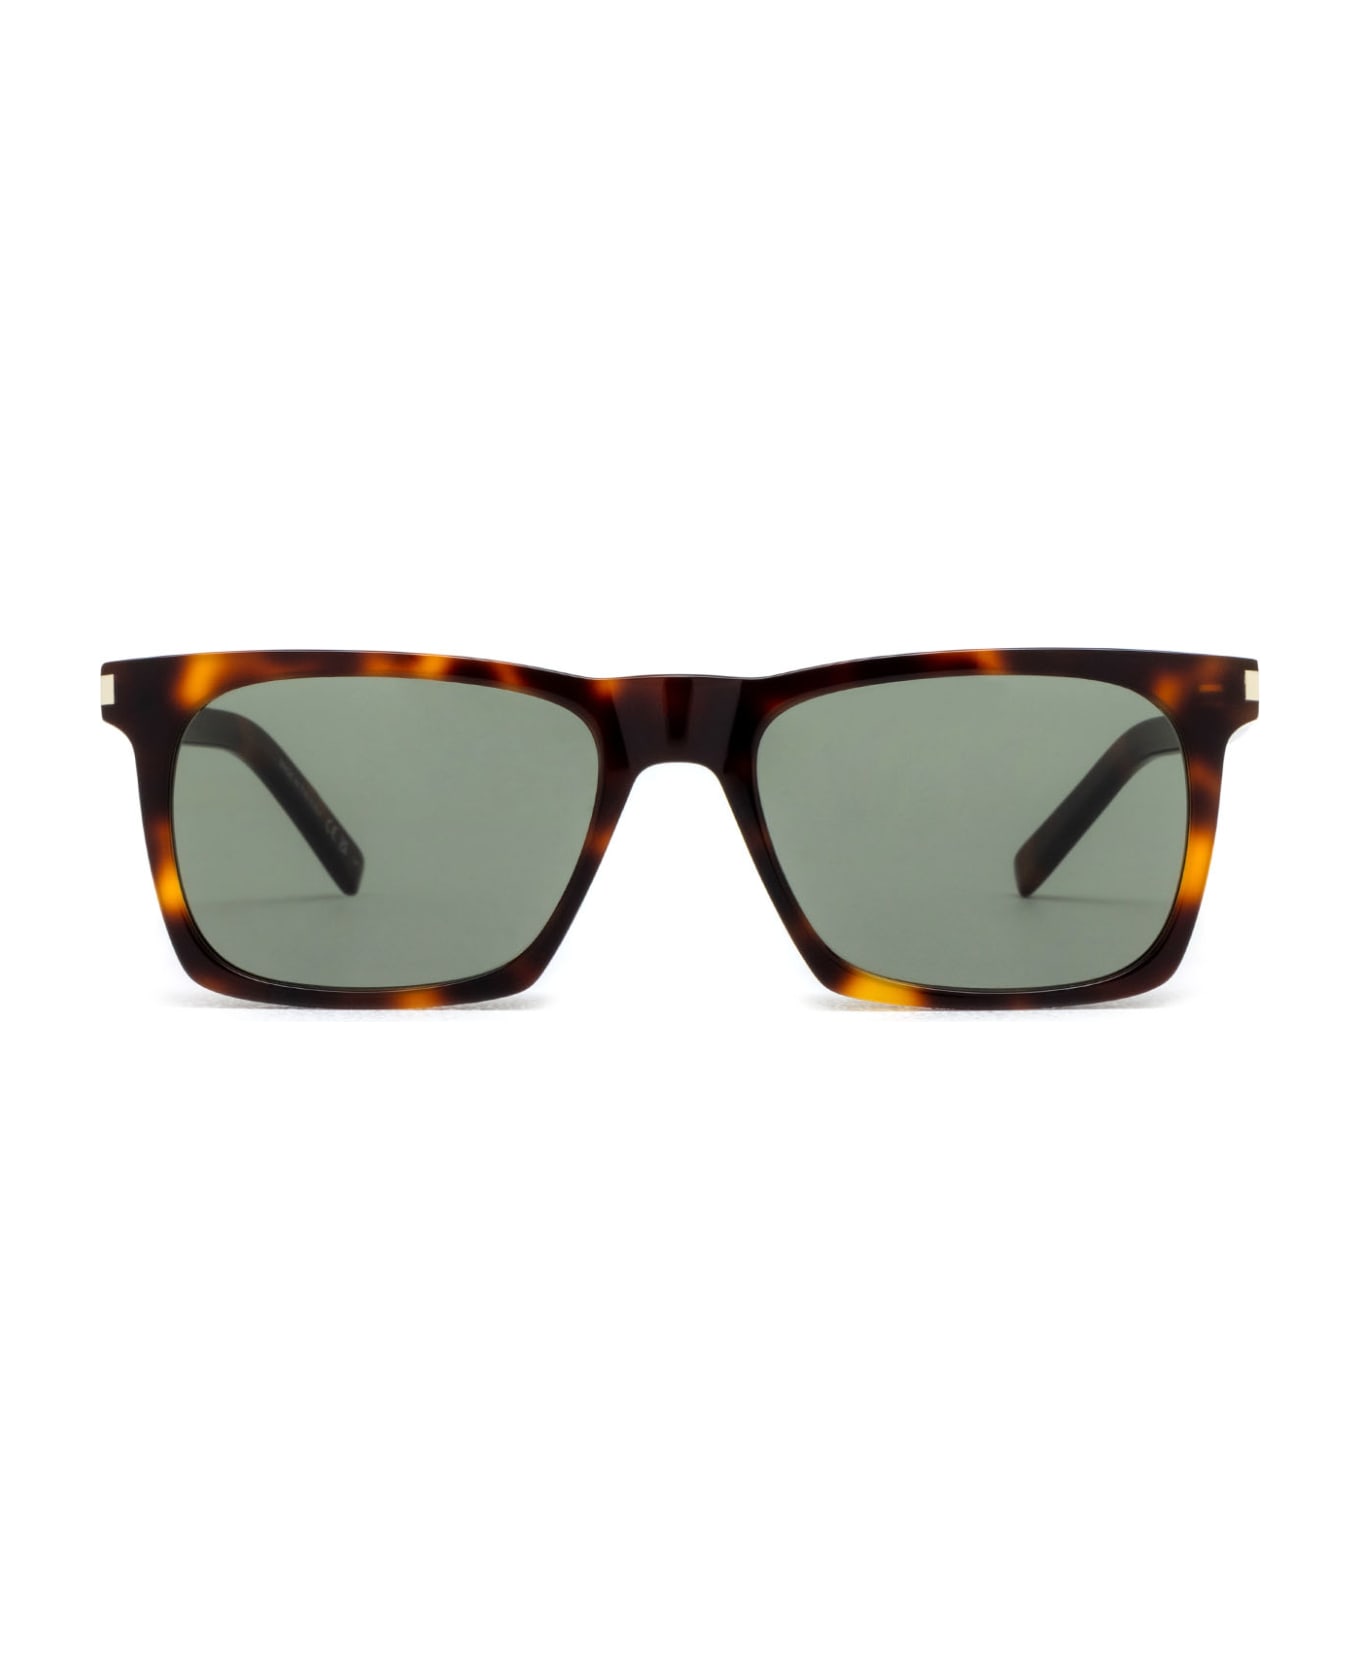 Saint Laurent Eyewear Sl 559 Havana Sunglasses - Havana